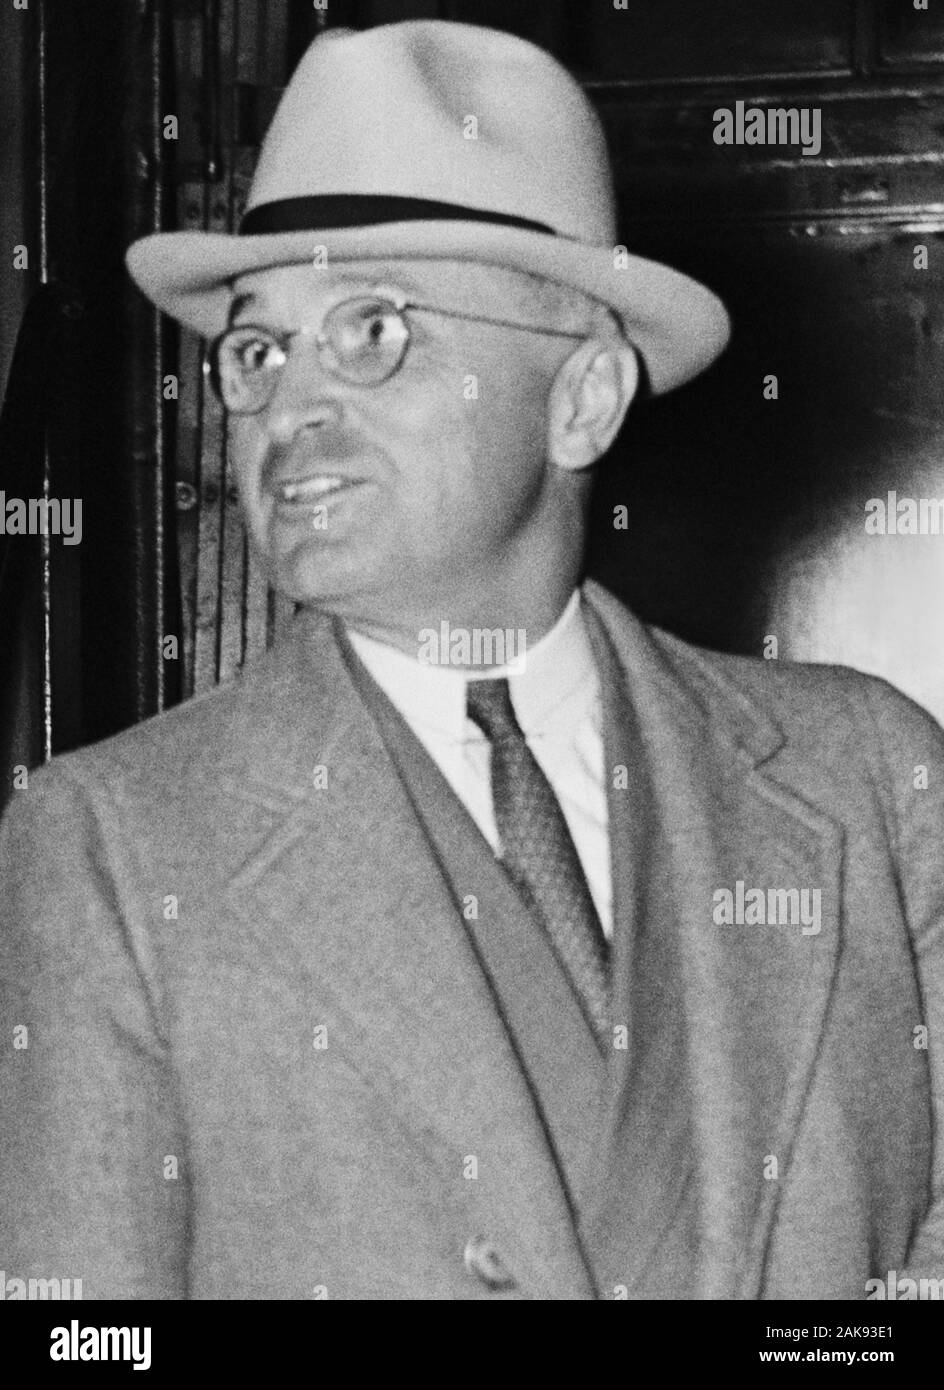 Vintage foto de Harry S Truman (1884 - 1972) - El 33º Presidente de los EE.UU. (1945 - 1953). Foto por Harris & Ewing tomadas alrededor de 1937, cuando Truman fue senador de Missouri. Foto de stock